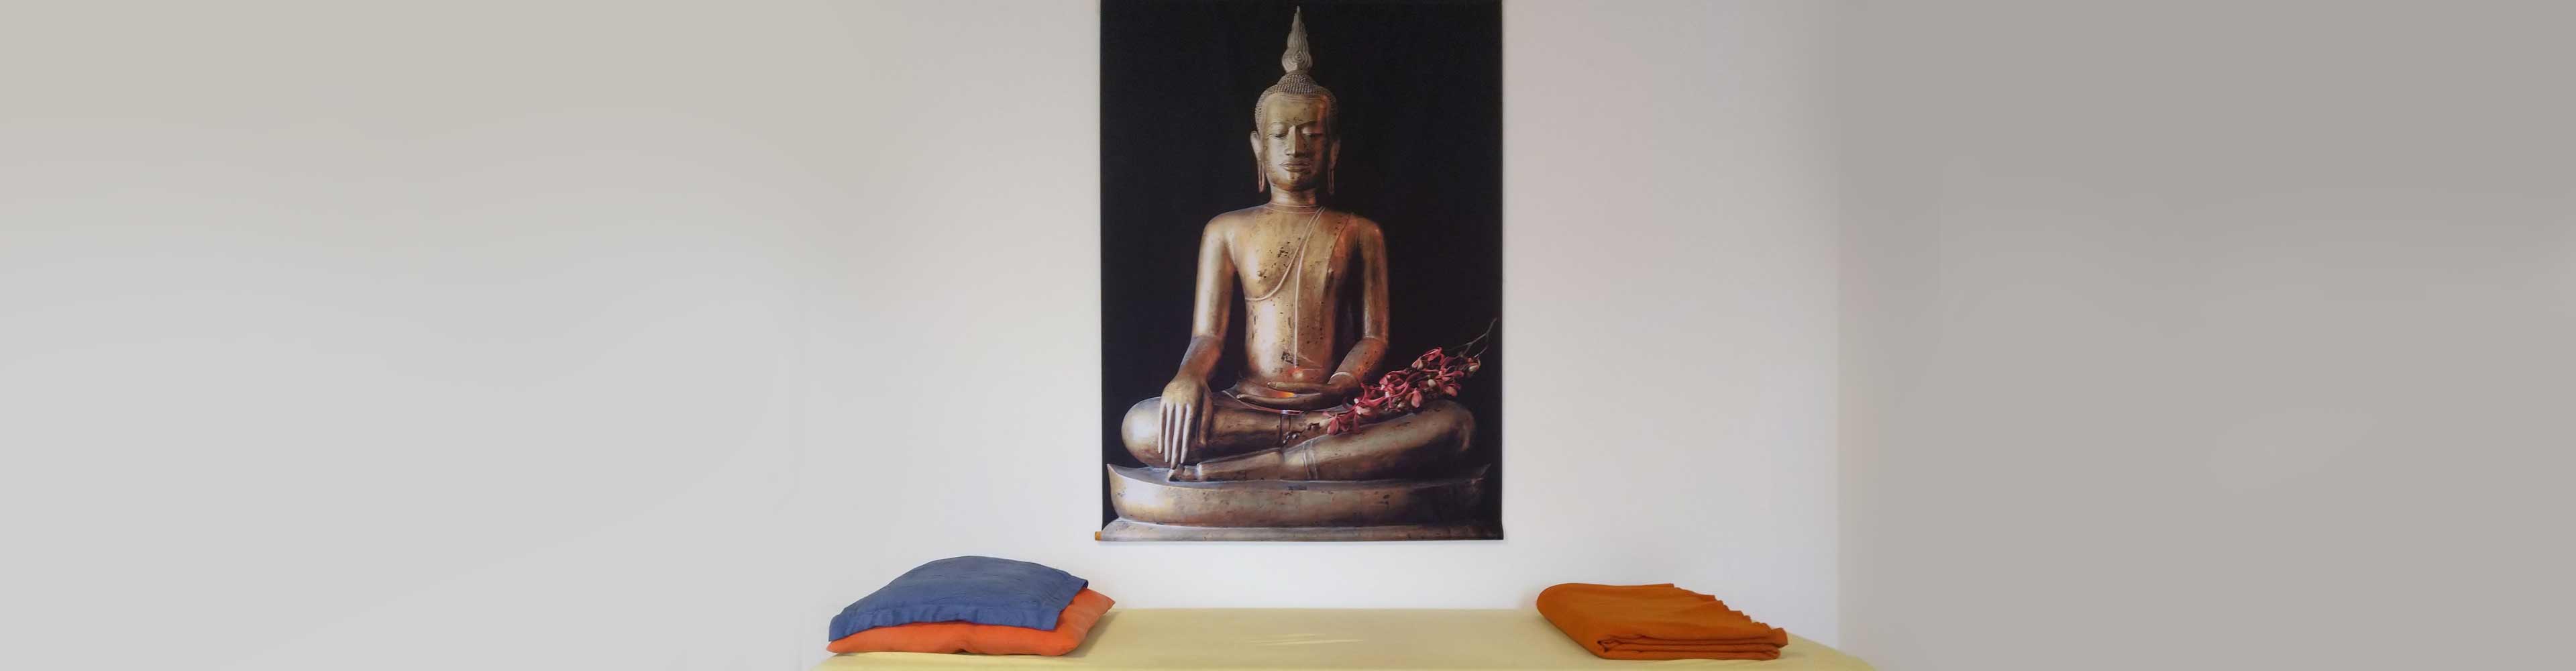 Ein Budda-Bild über einer Behandlungslige mit Kissen und zusammengelegter Decke.